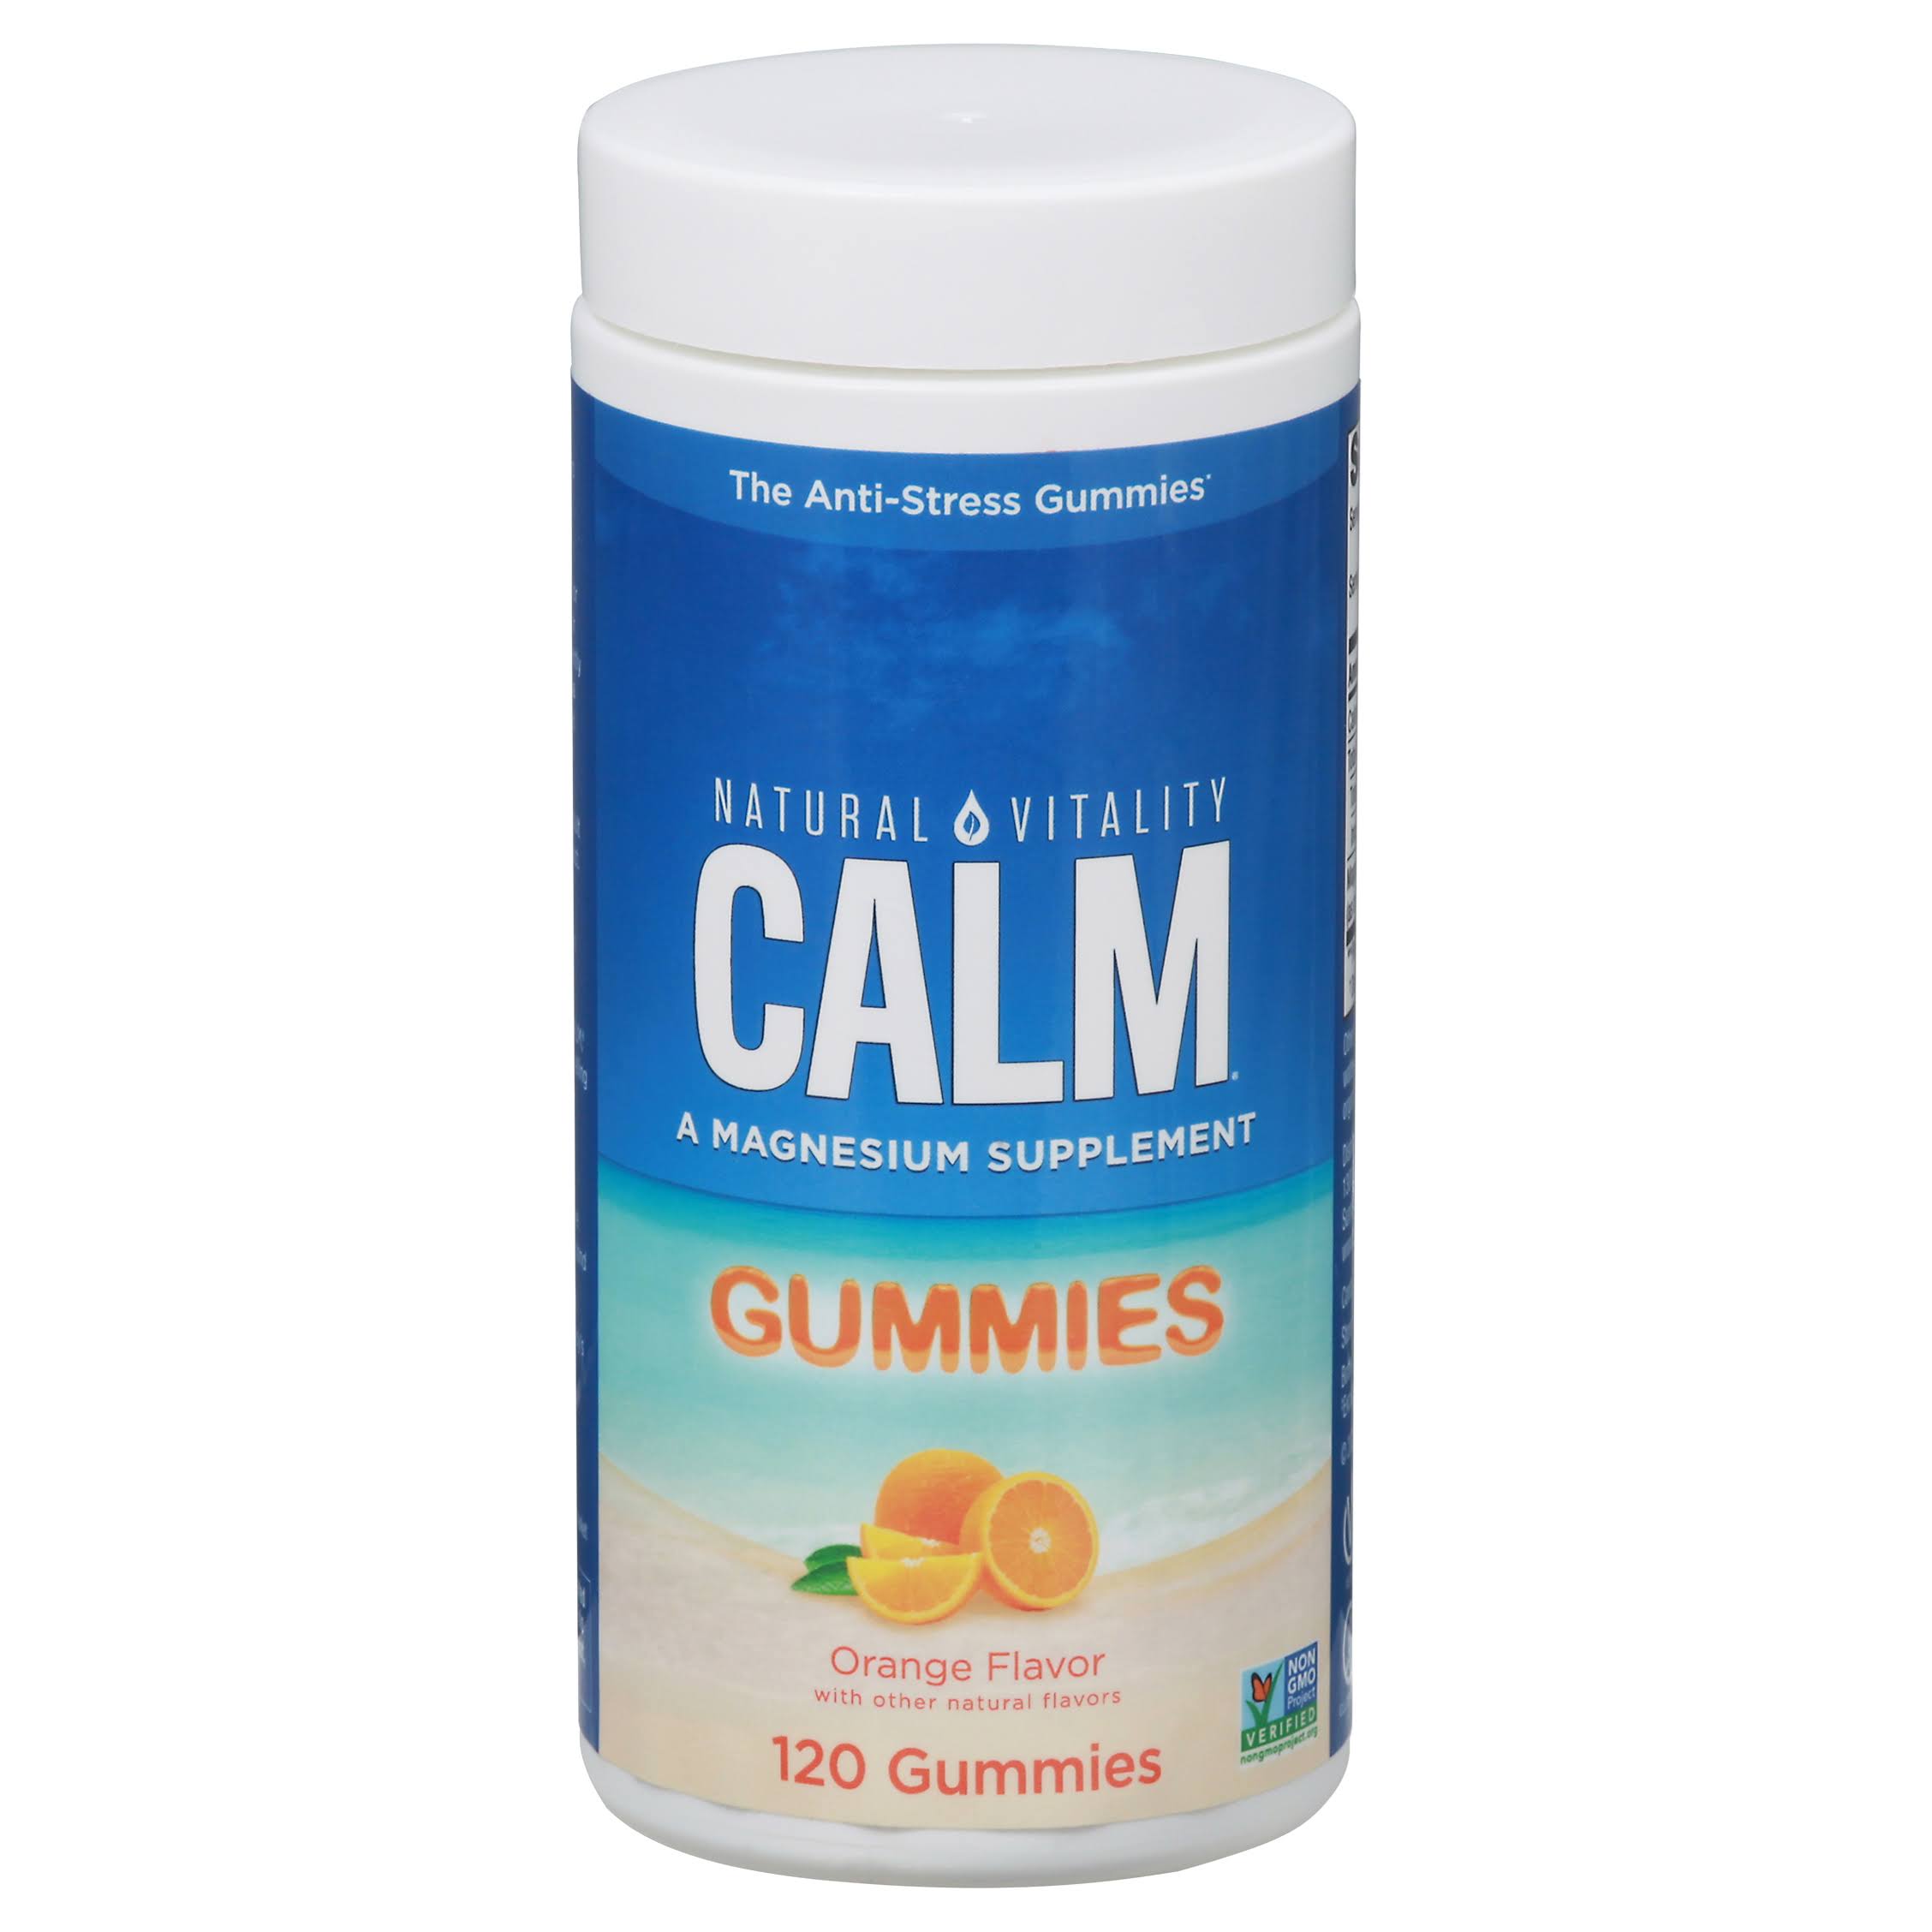 Natural Vitality Calm Gummies Orange Flavor - 120 Gummies